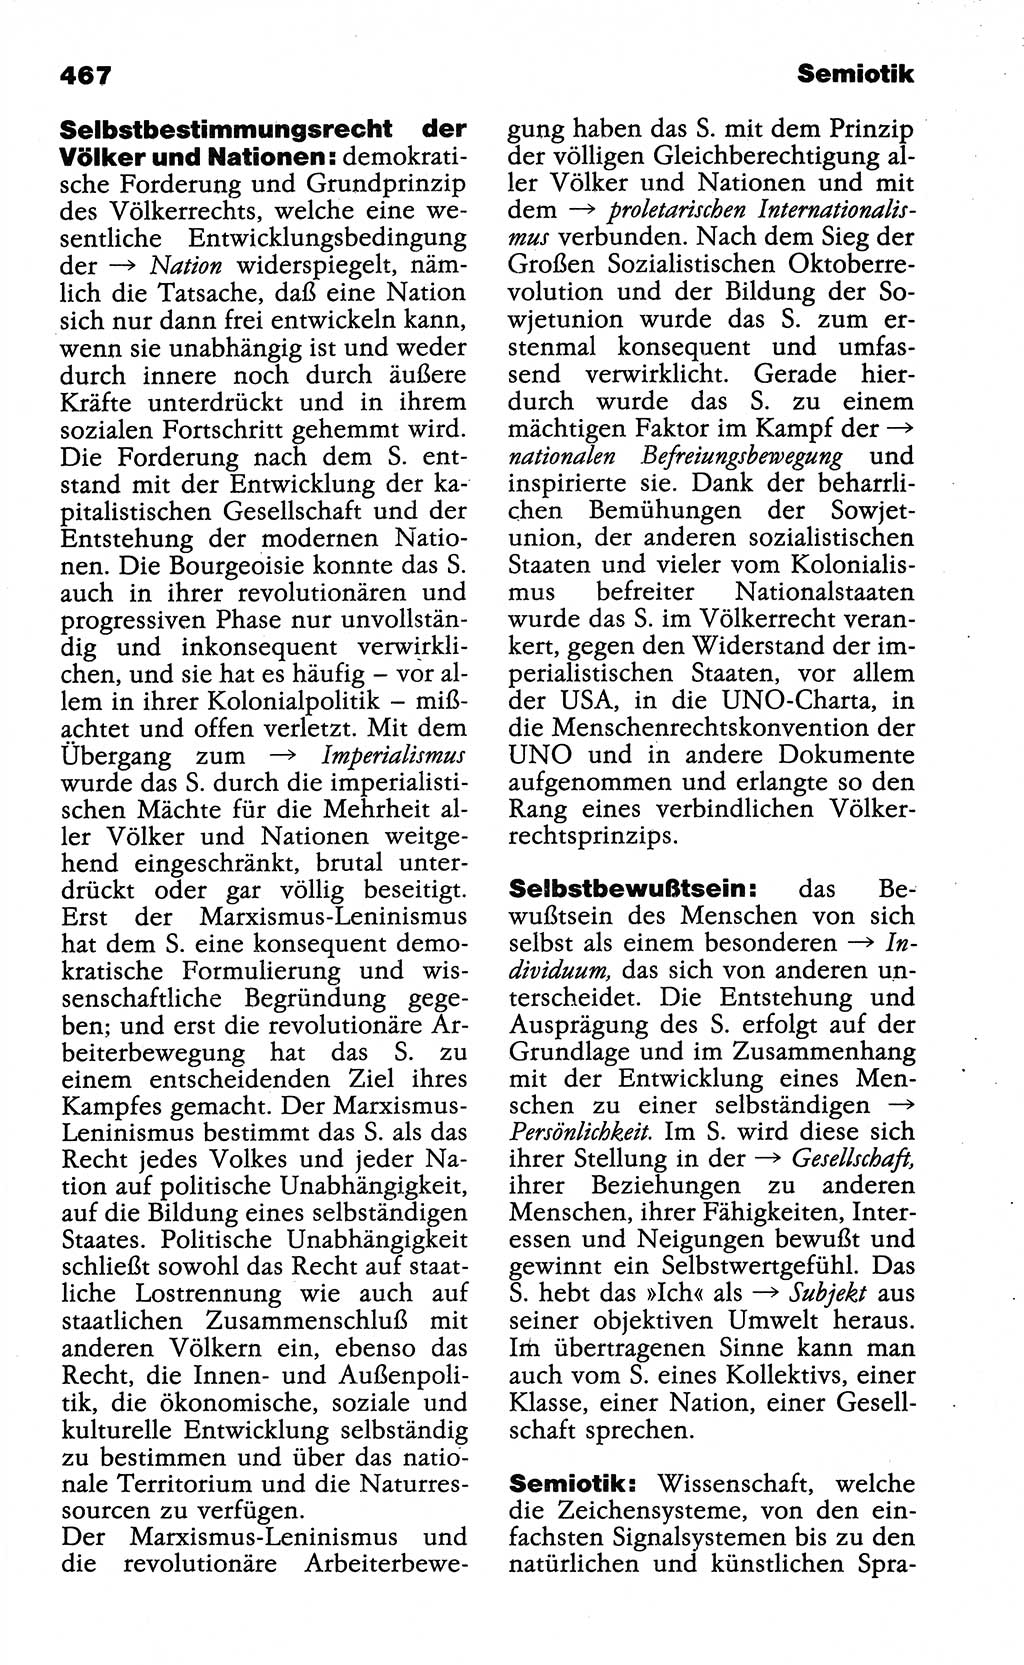 WÃ¶rterbuch der marxistisch-leninistischen Philosophie [Deutsche Demokratische Republik (DDR)] 1985, Seite 467 (Wb. ML Phil. DDR 1985, S. 467)